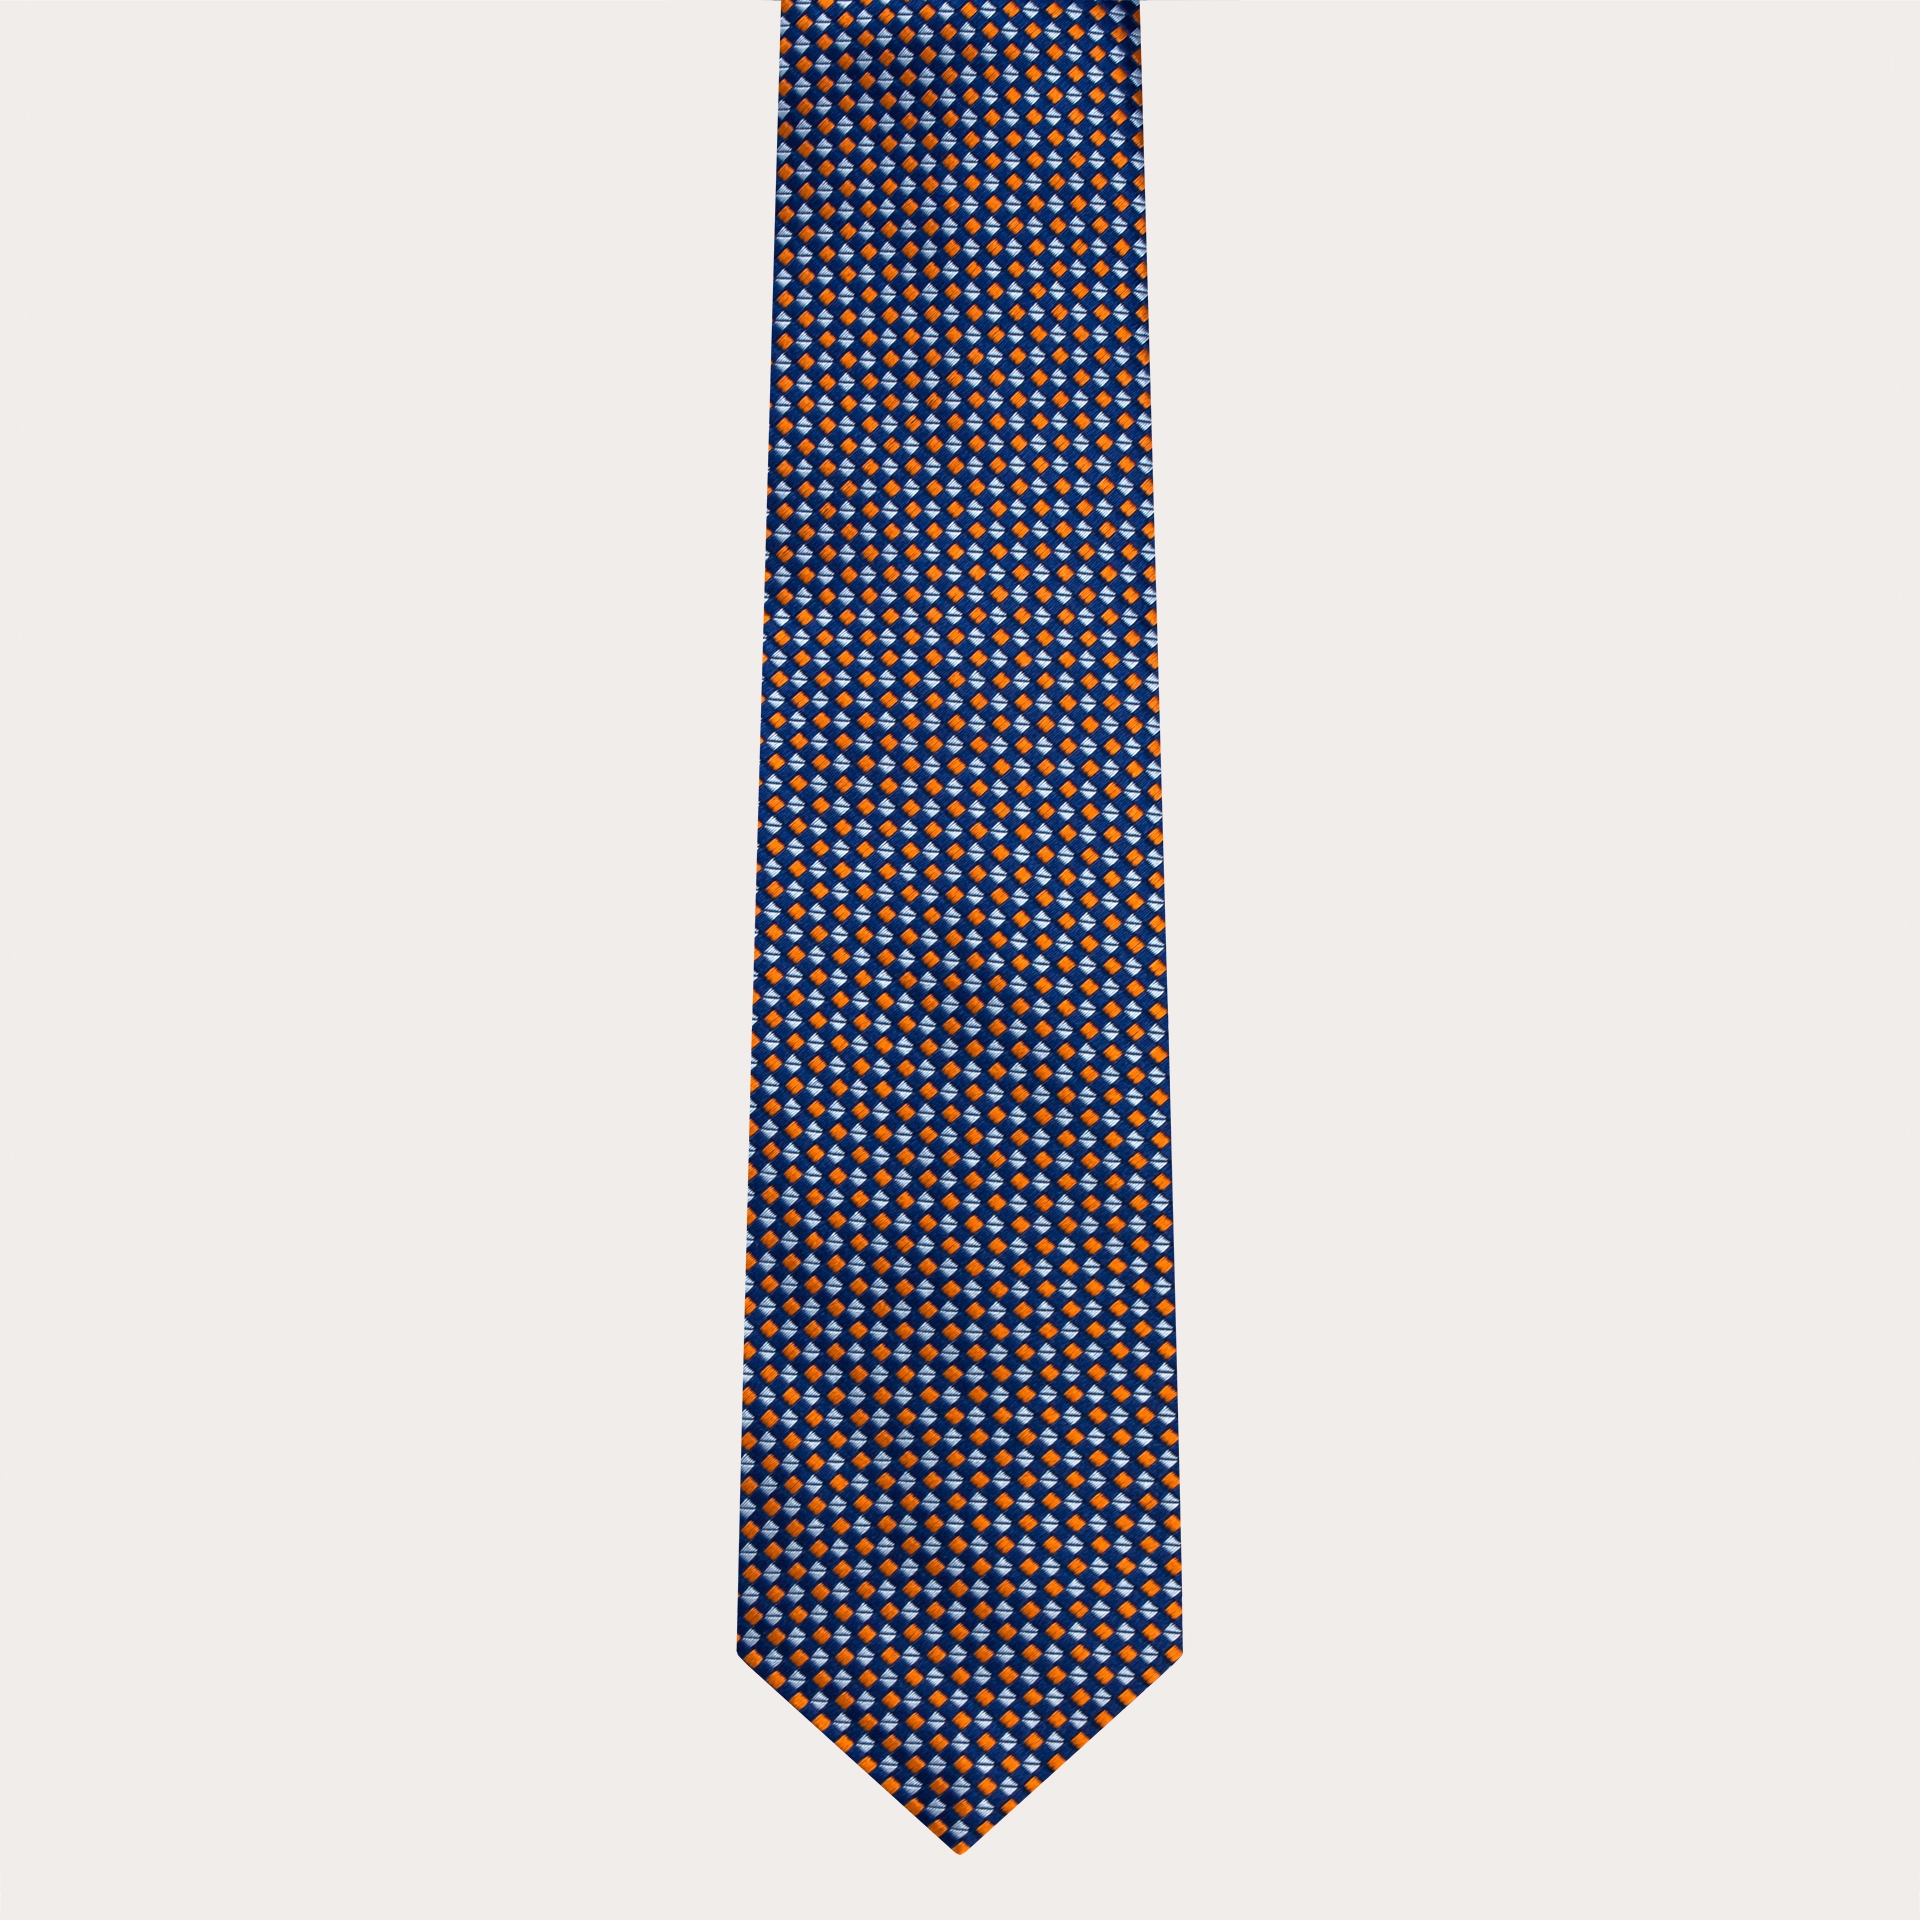 Cravatta in seta jacquard, motivo multicolor